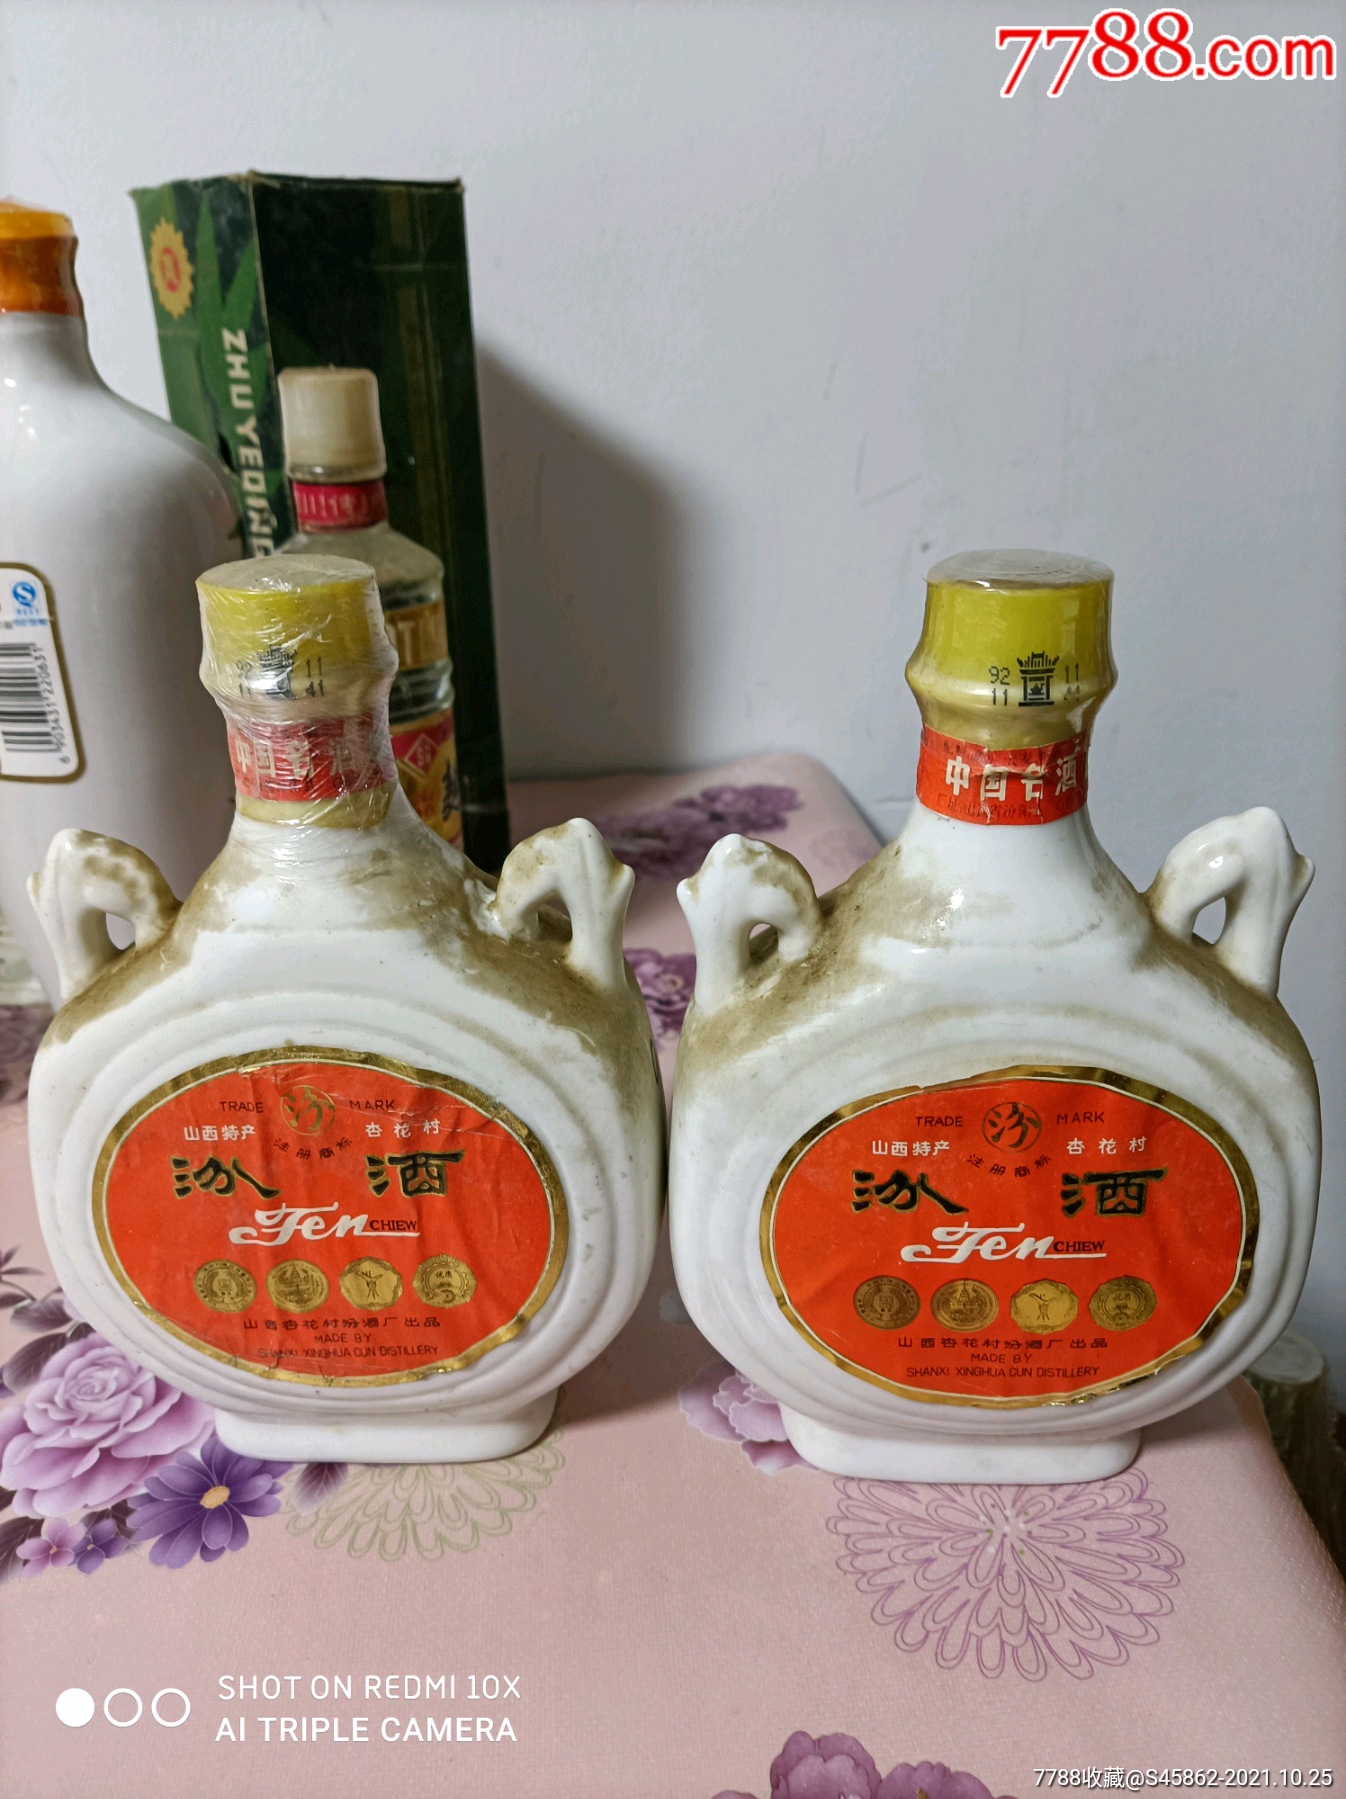 5品99中国名酒:再来泸州老窖一件￥4,8889品99玻璃瓶茅台王子